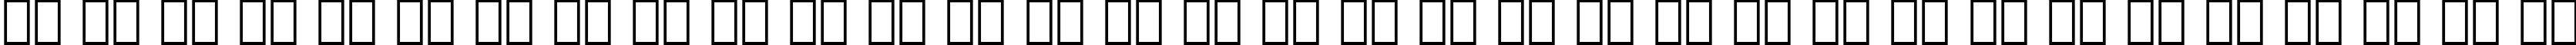 Пример написания русского алфавита шрифтом Zurich Black BT